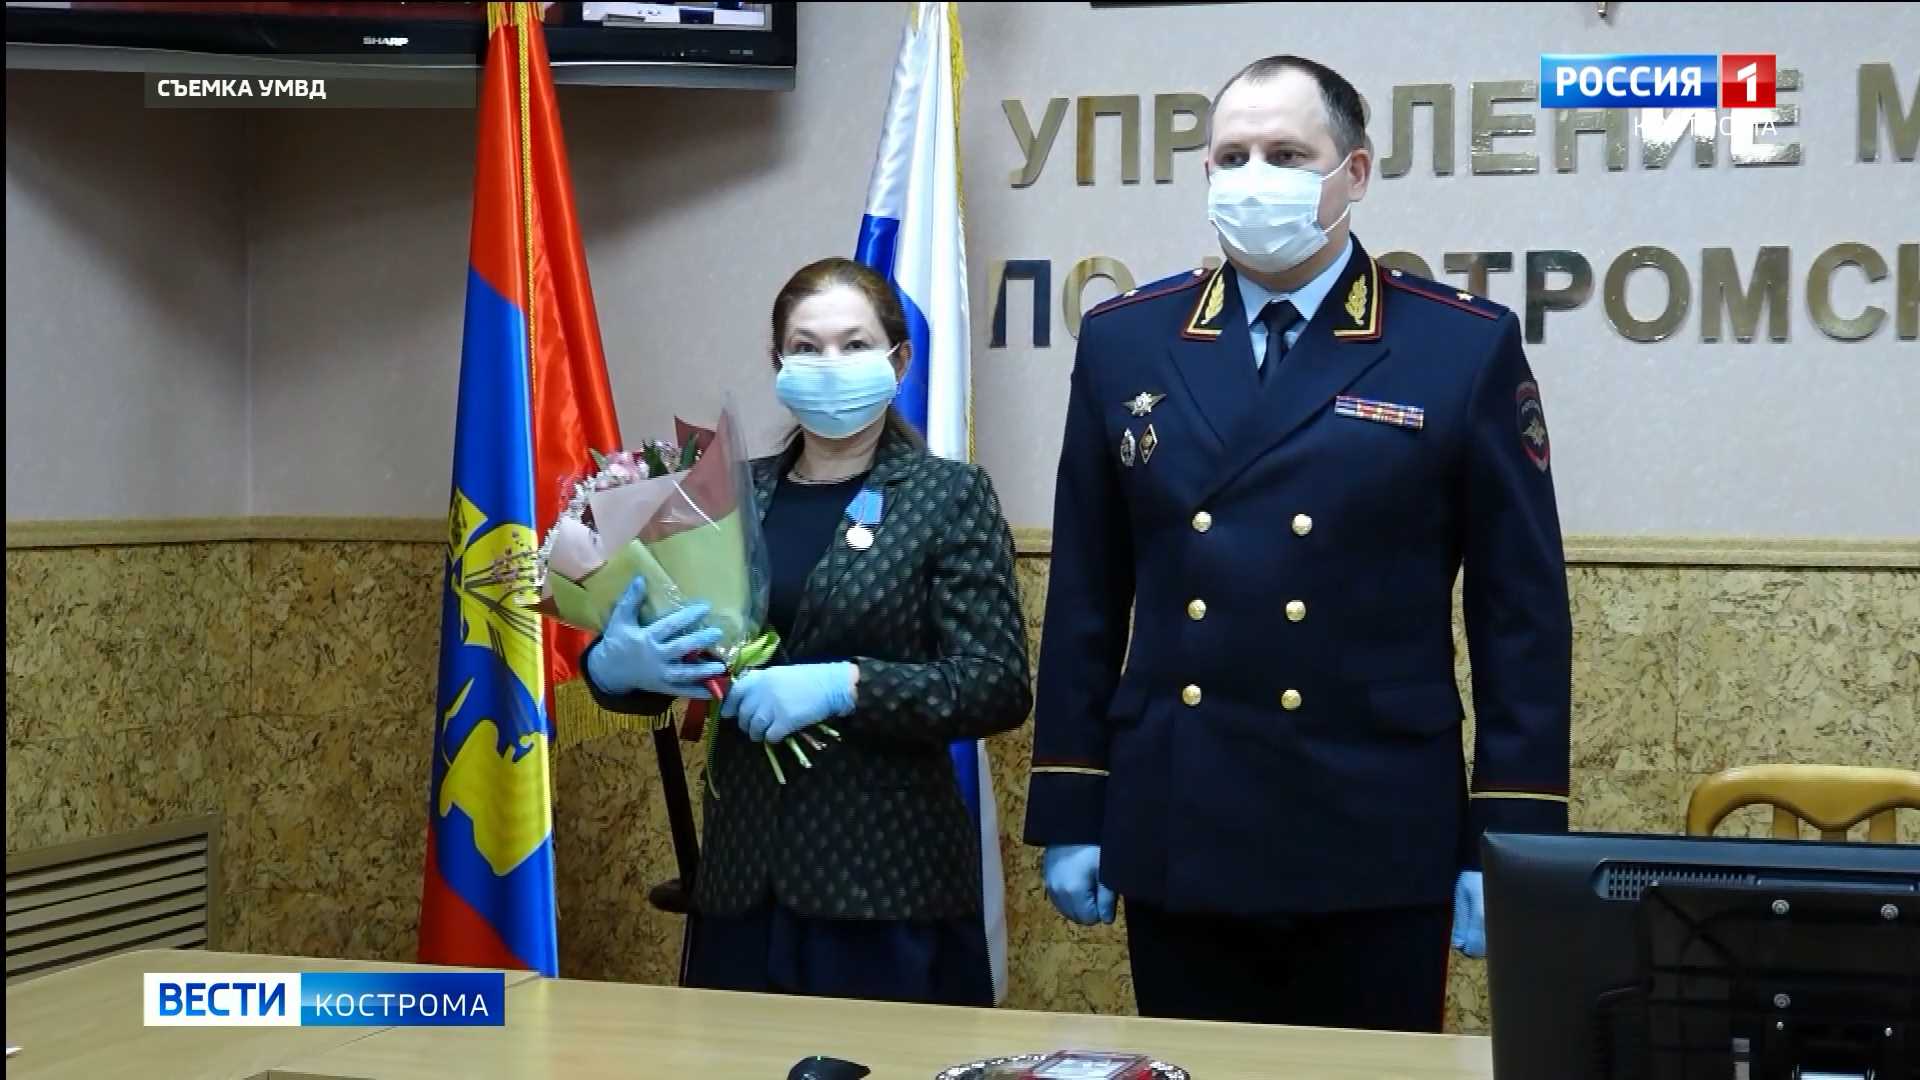 Медсестра из Костромы награждена медалью МВД